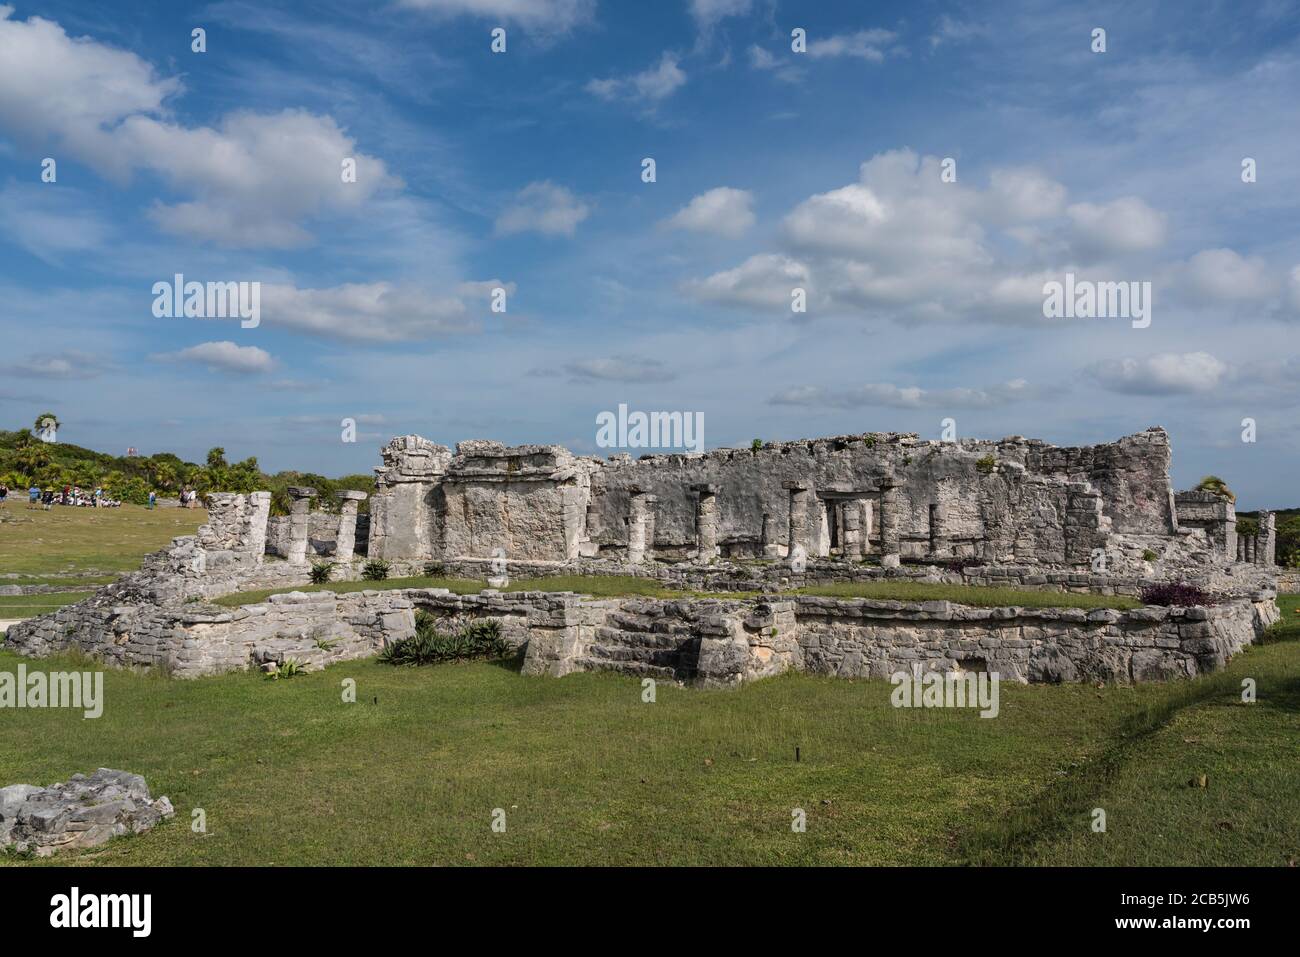 Das Haus der Säulen in den Ruinen der Maya-Stadt Tulum an der Küste des Karibischen Meeres. Tulum National Park, Quintana Roo, Mexiko. Stockfoto